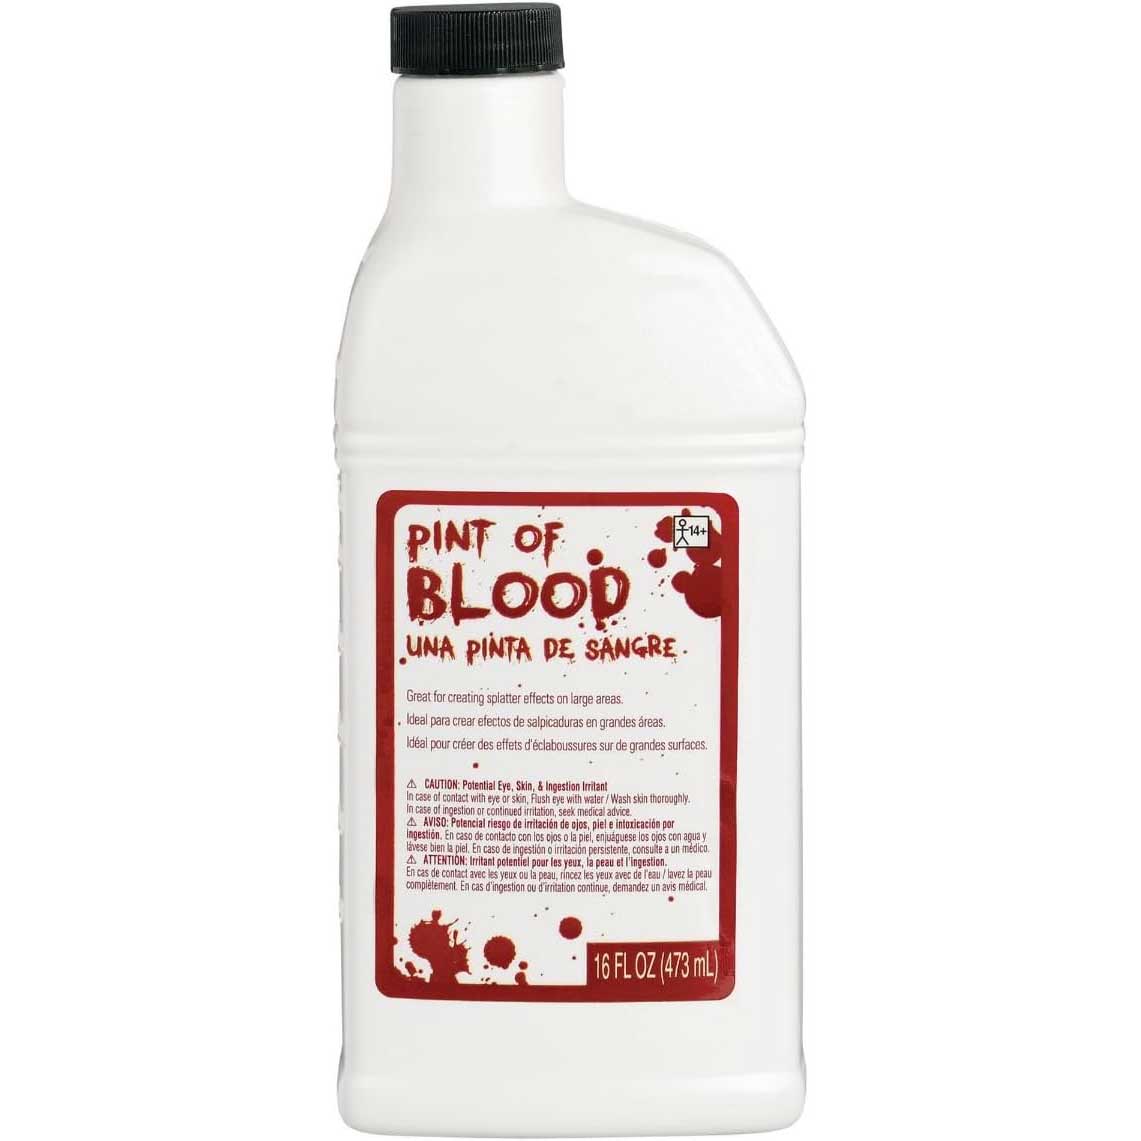 Blood Pint